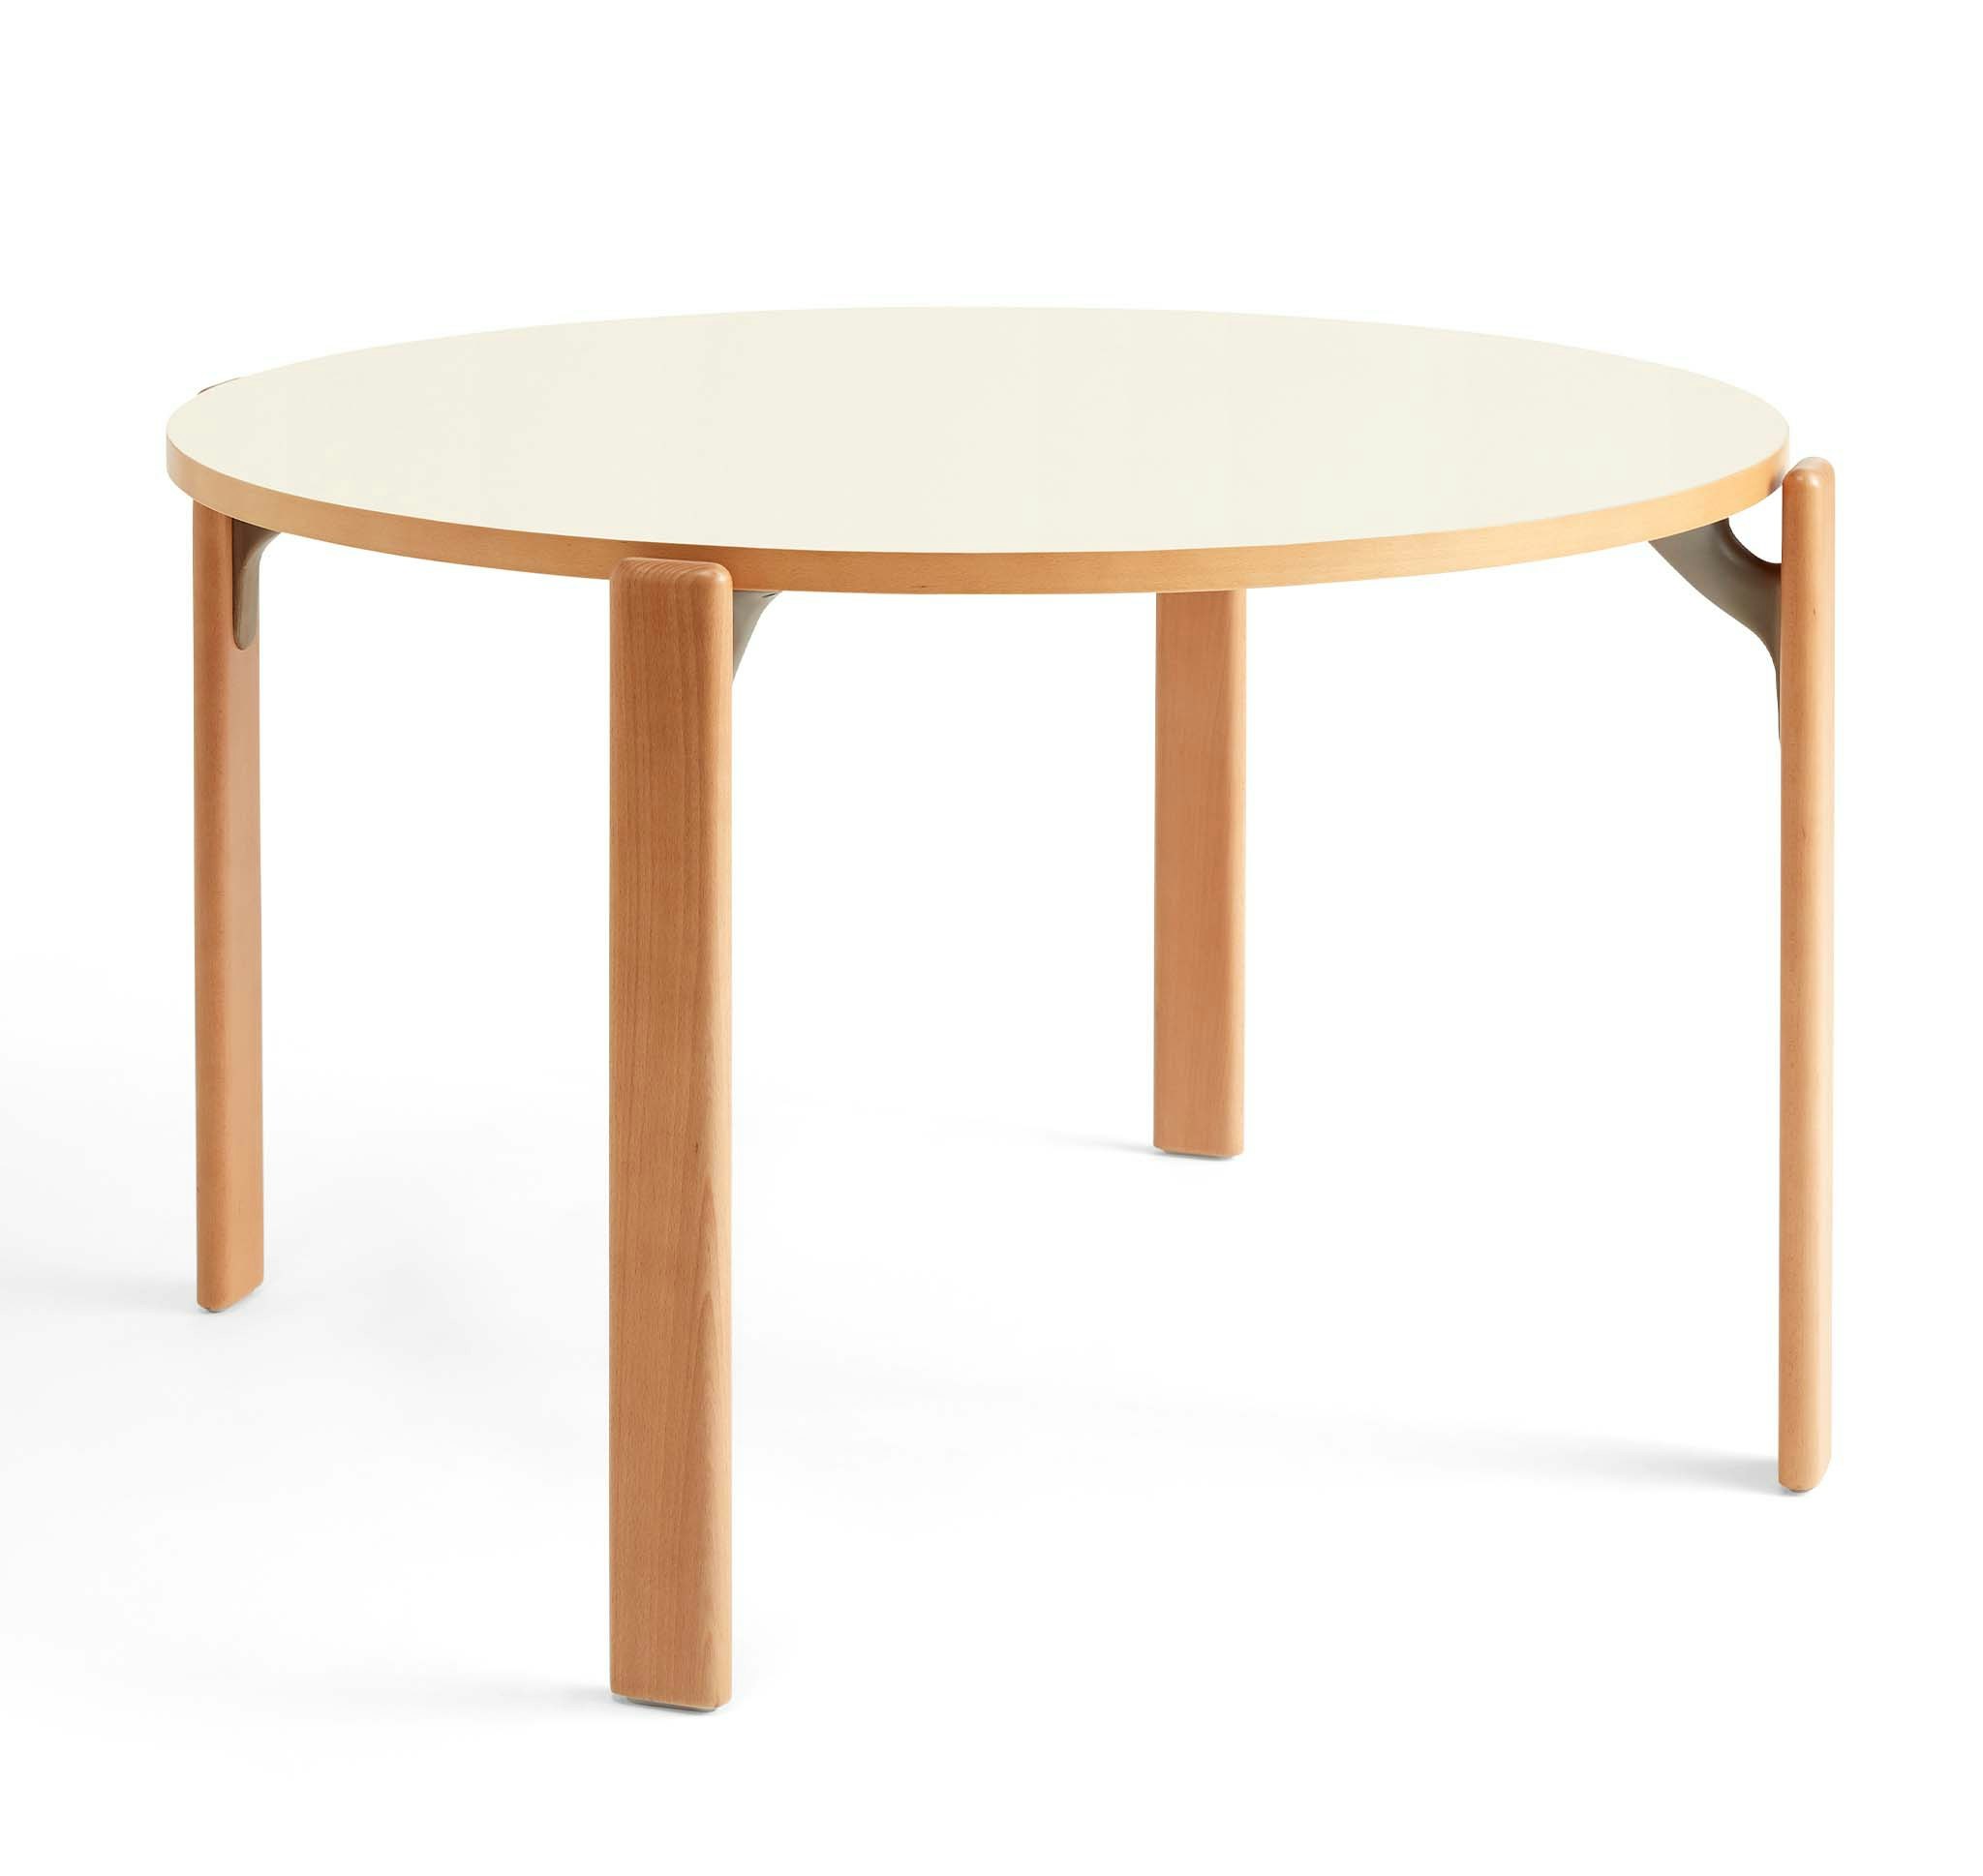 Rey Table by Bruno Rey / Dietiker for Hay